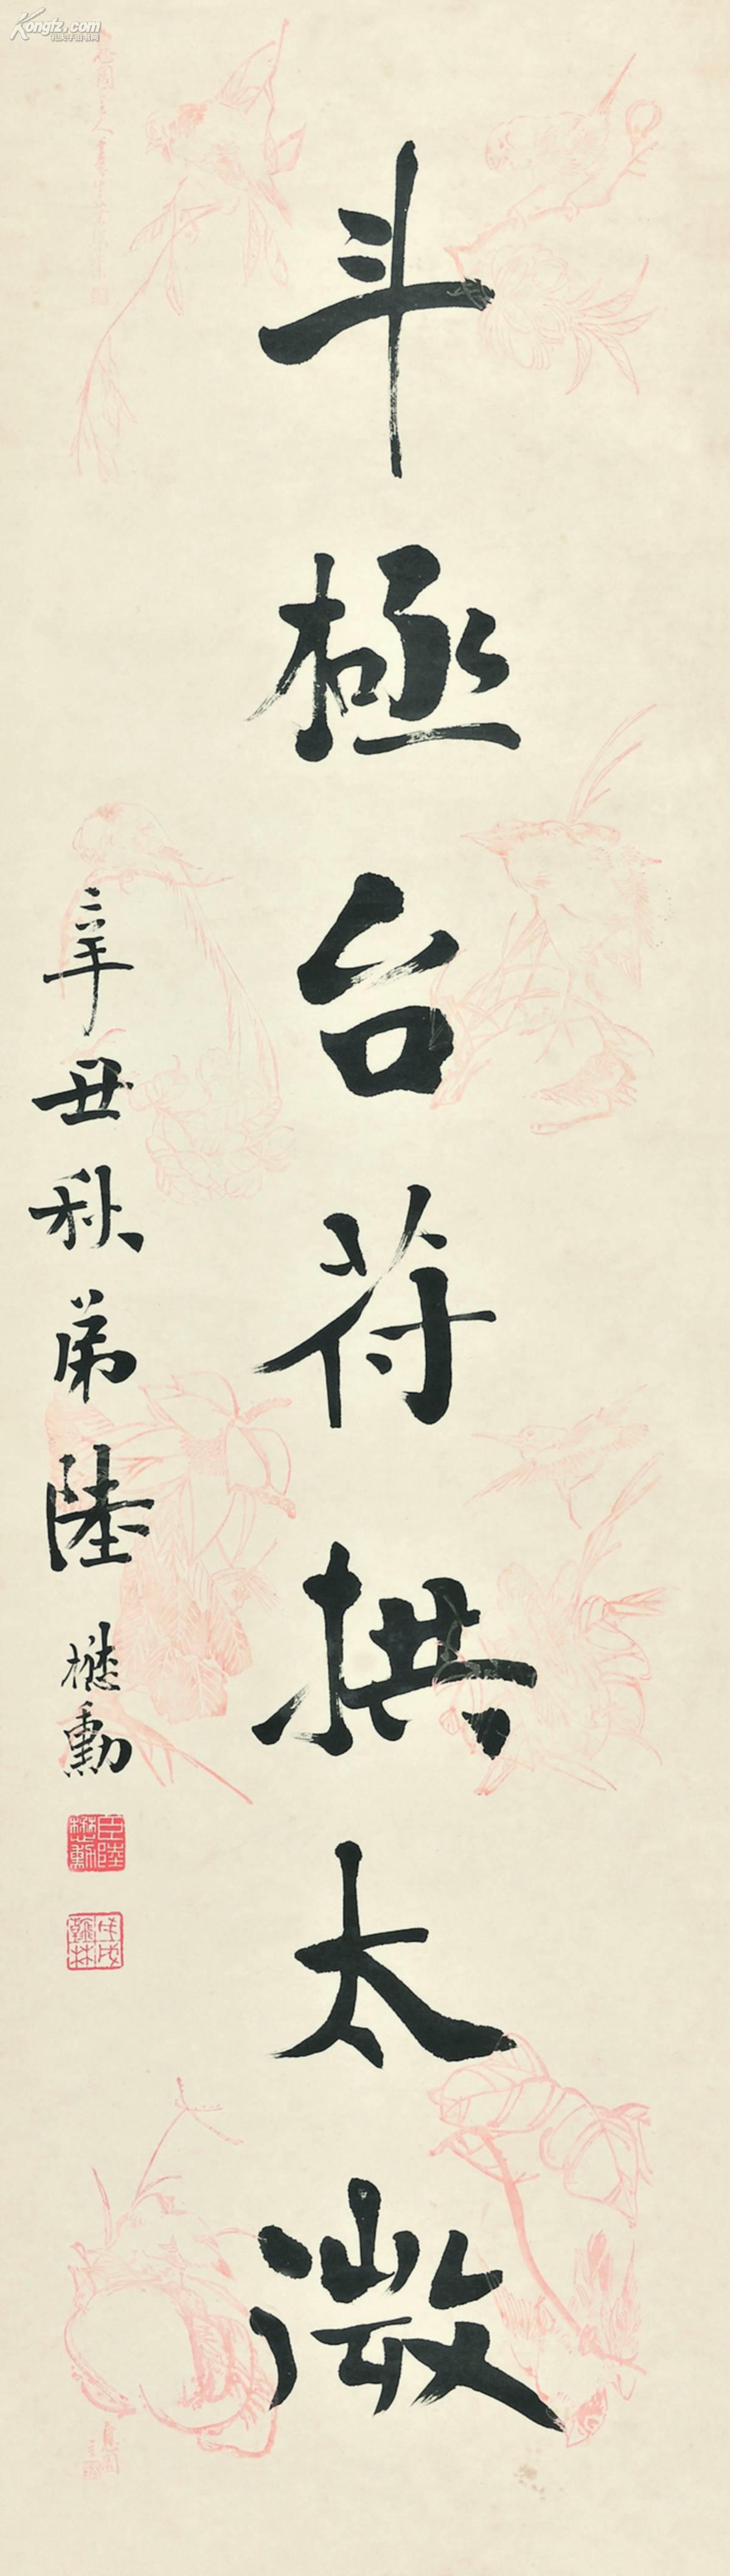 陆懋勋 辛丑年(1901) 行书七言联